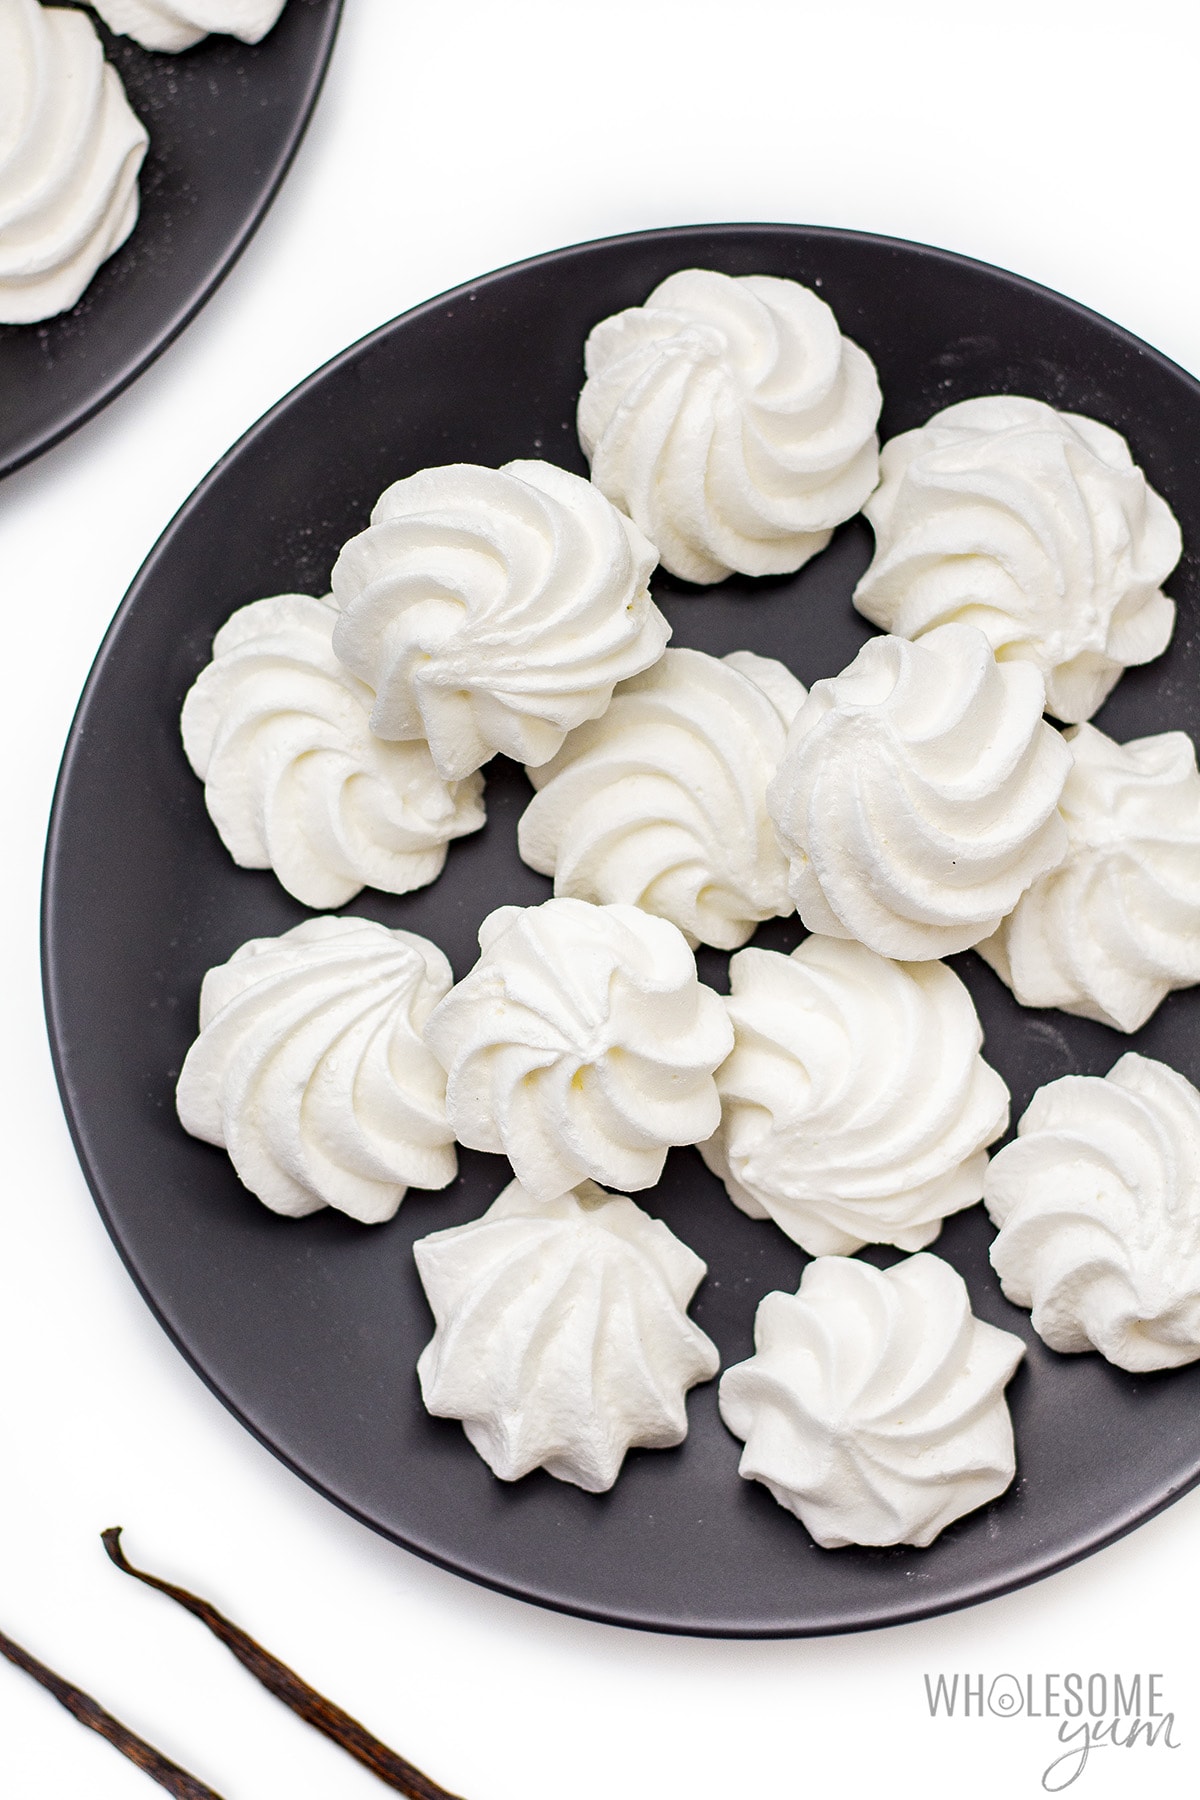 Keto meringue cookies on a plate.